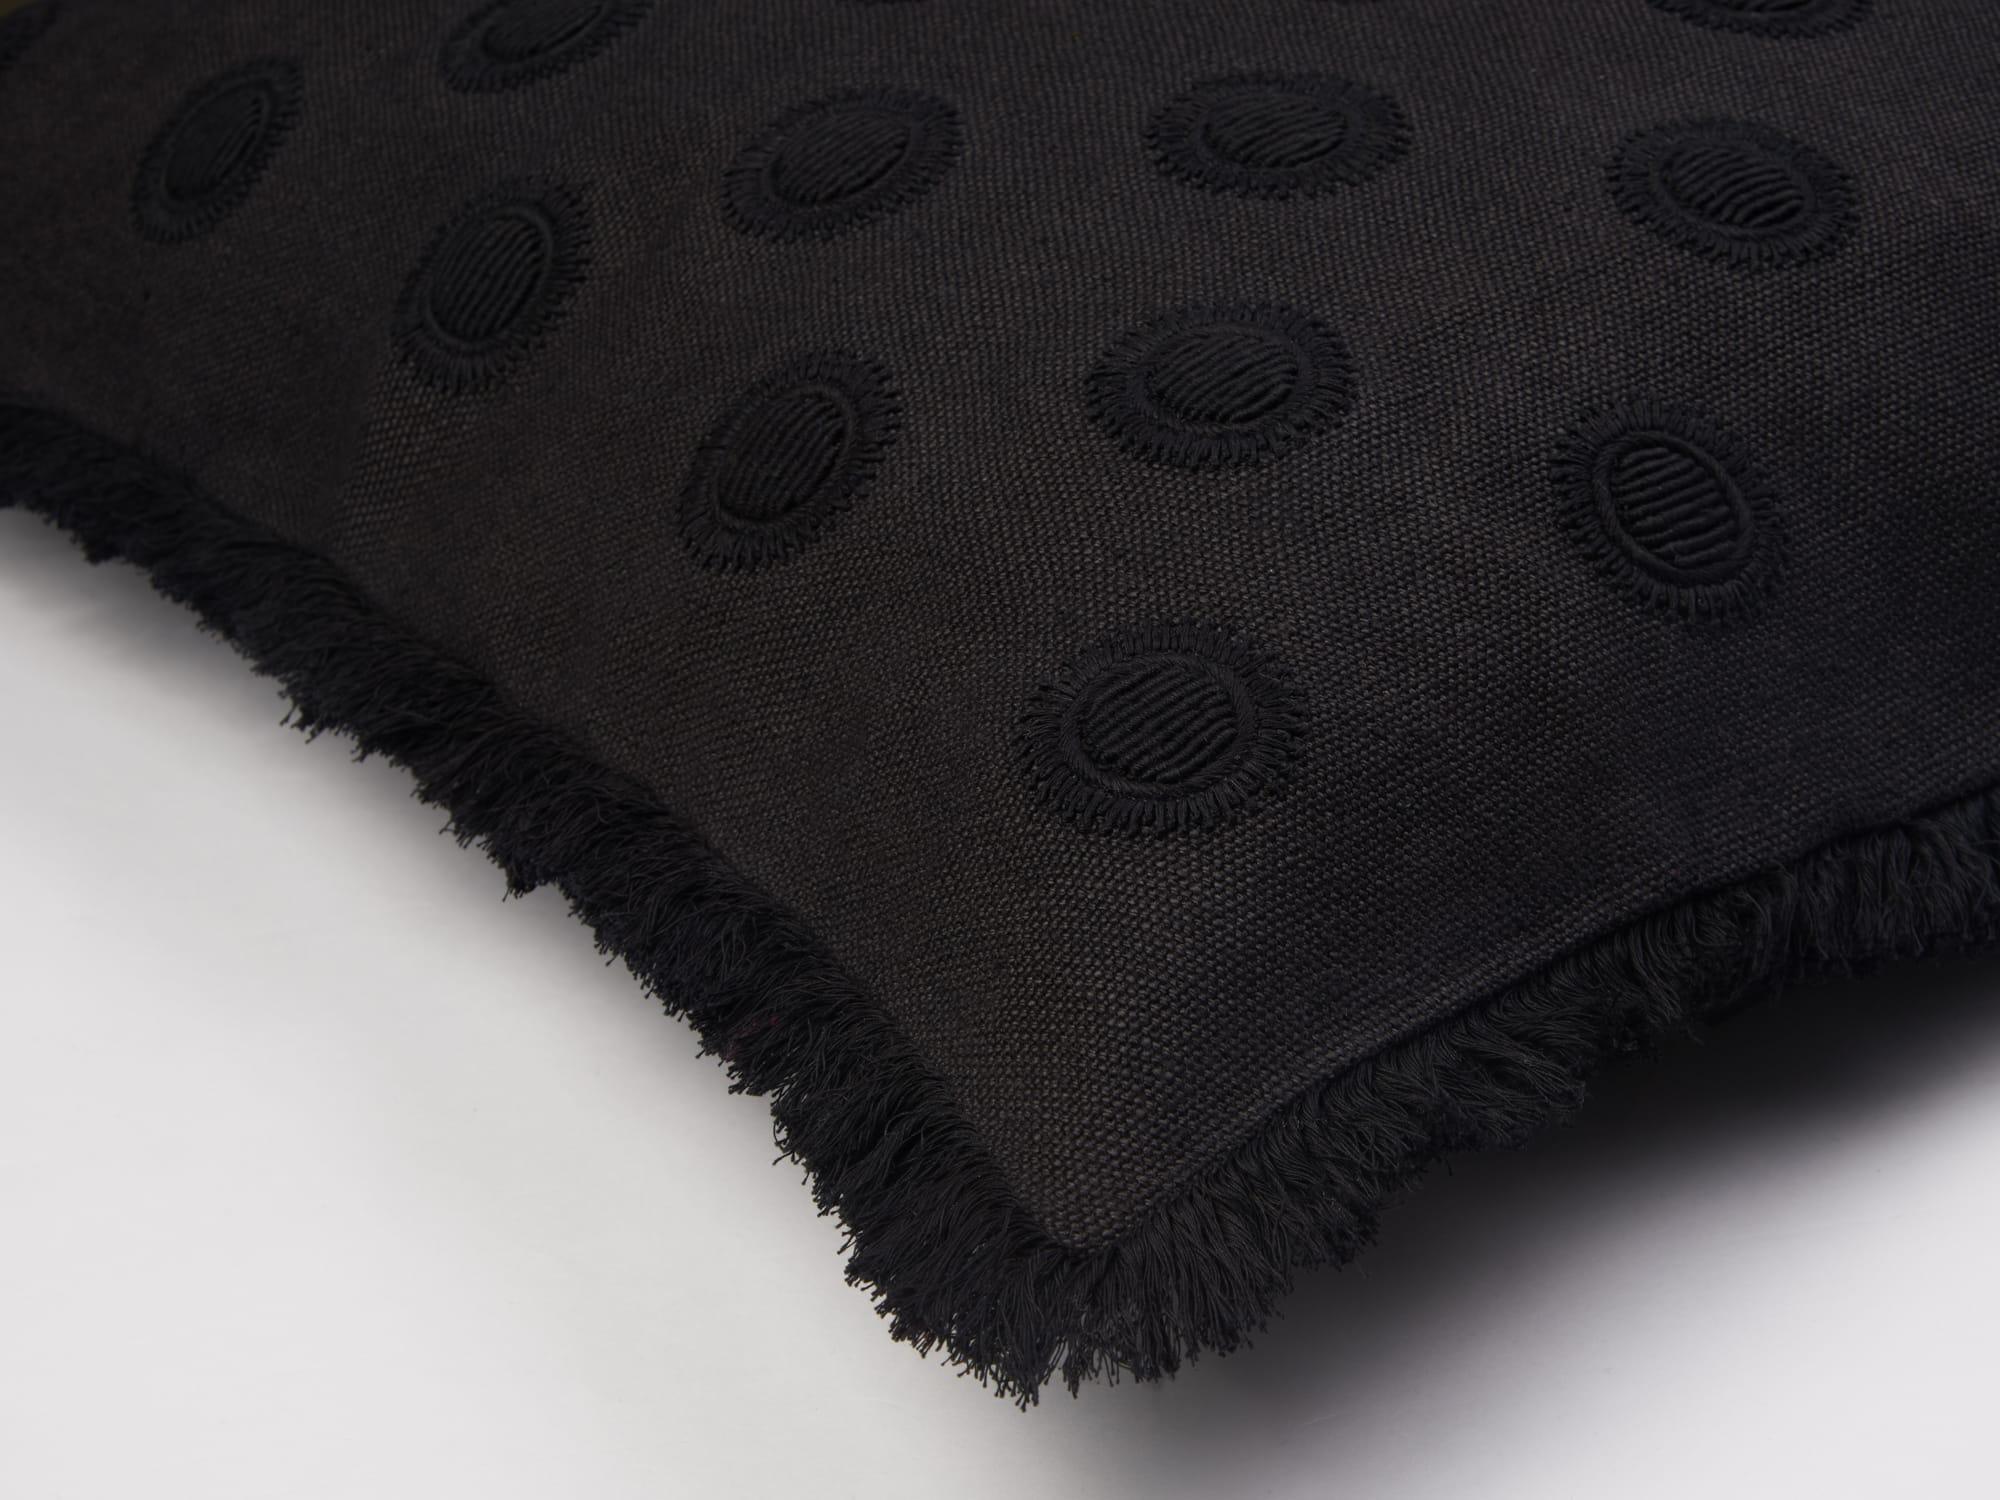 Schwarzer Ton in Ton Kissenbezug, vollständig von Hand auf hochwertiger Baumwolle gestickt. 
Nur Abdeckung, Entenfedernfüllung kann separat bestellt werden
Standardgröße 65 x 65 cm. Auf Anfrage auch in anderen Größen, Farbkombinationen oder